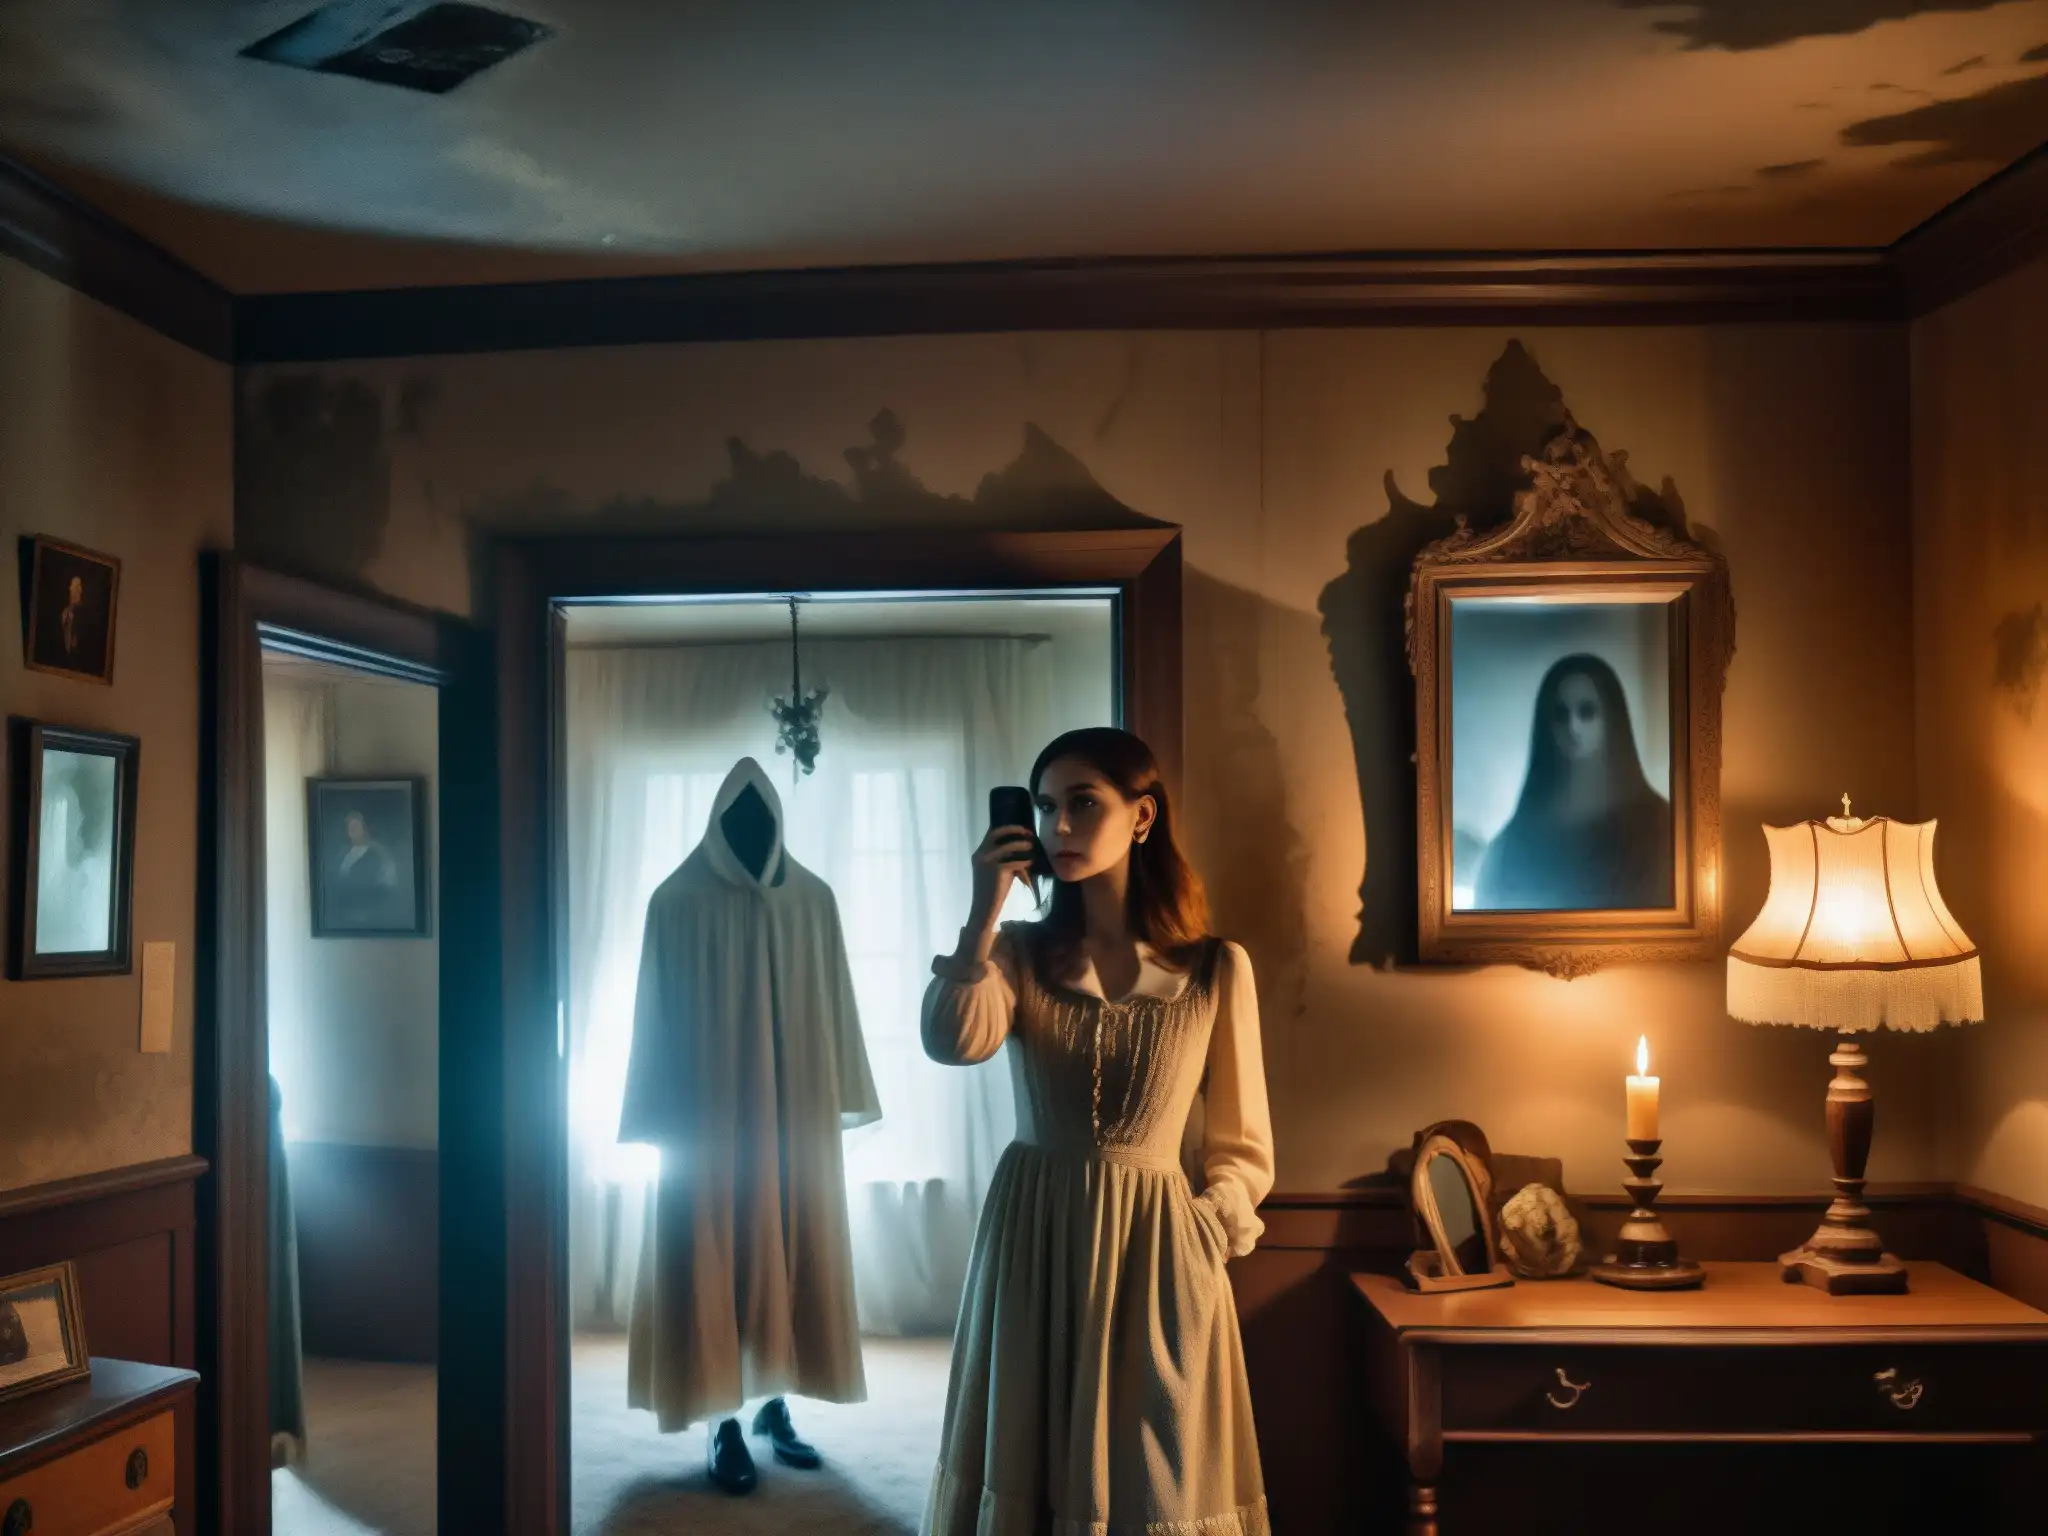 Una selfie con un fantasma en una habitación lúgubre llena de misterio y nostalgia